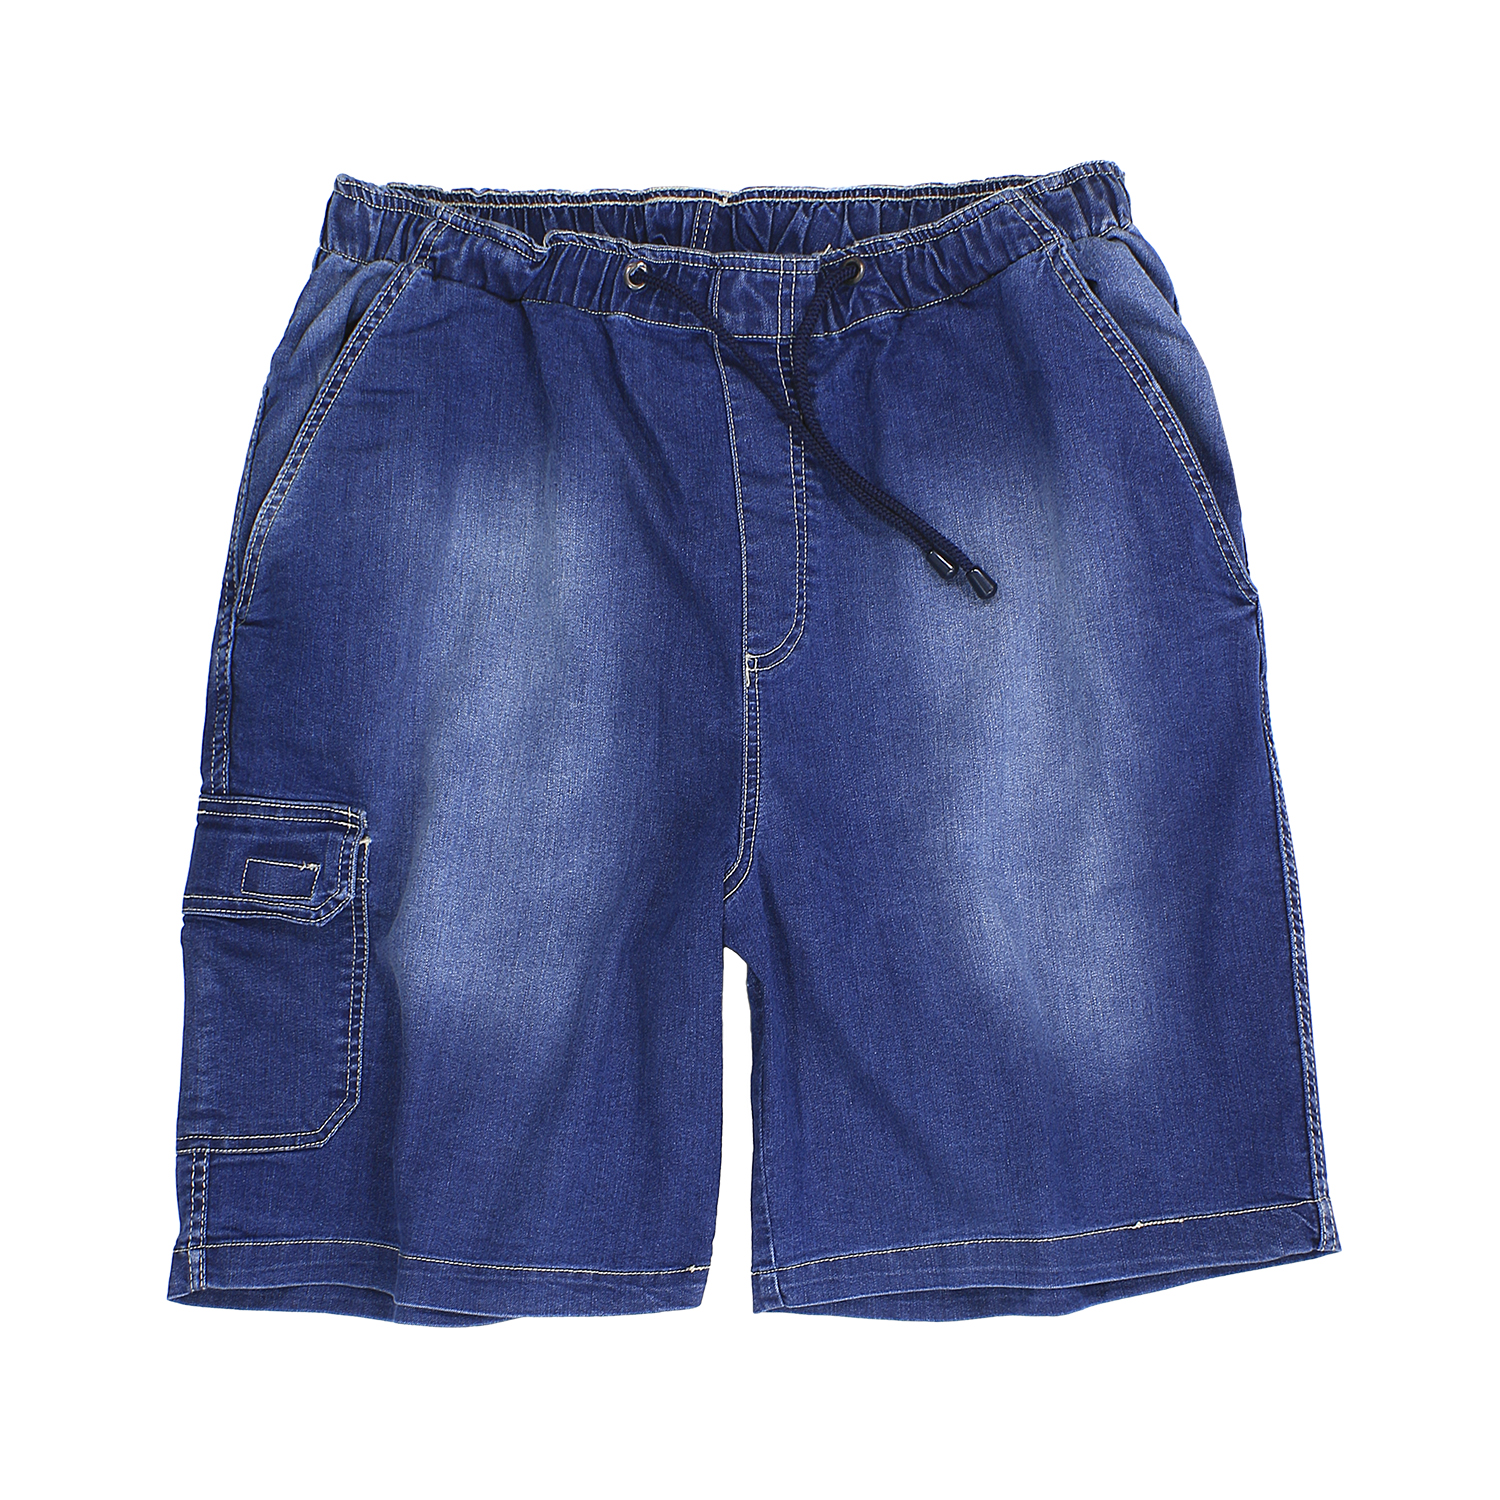 Cargo Jeans Bermuda stonewash von Abraxas bis Übergröße 10XL